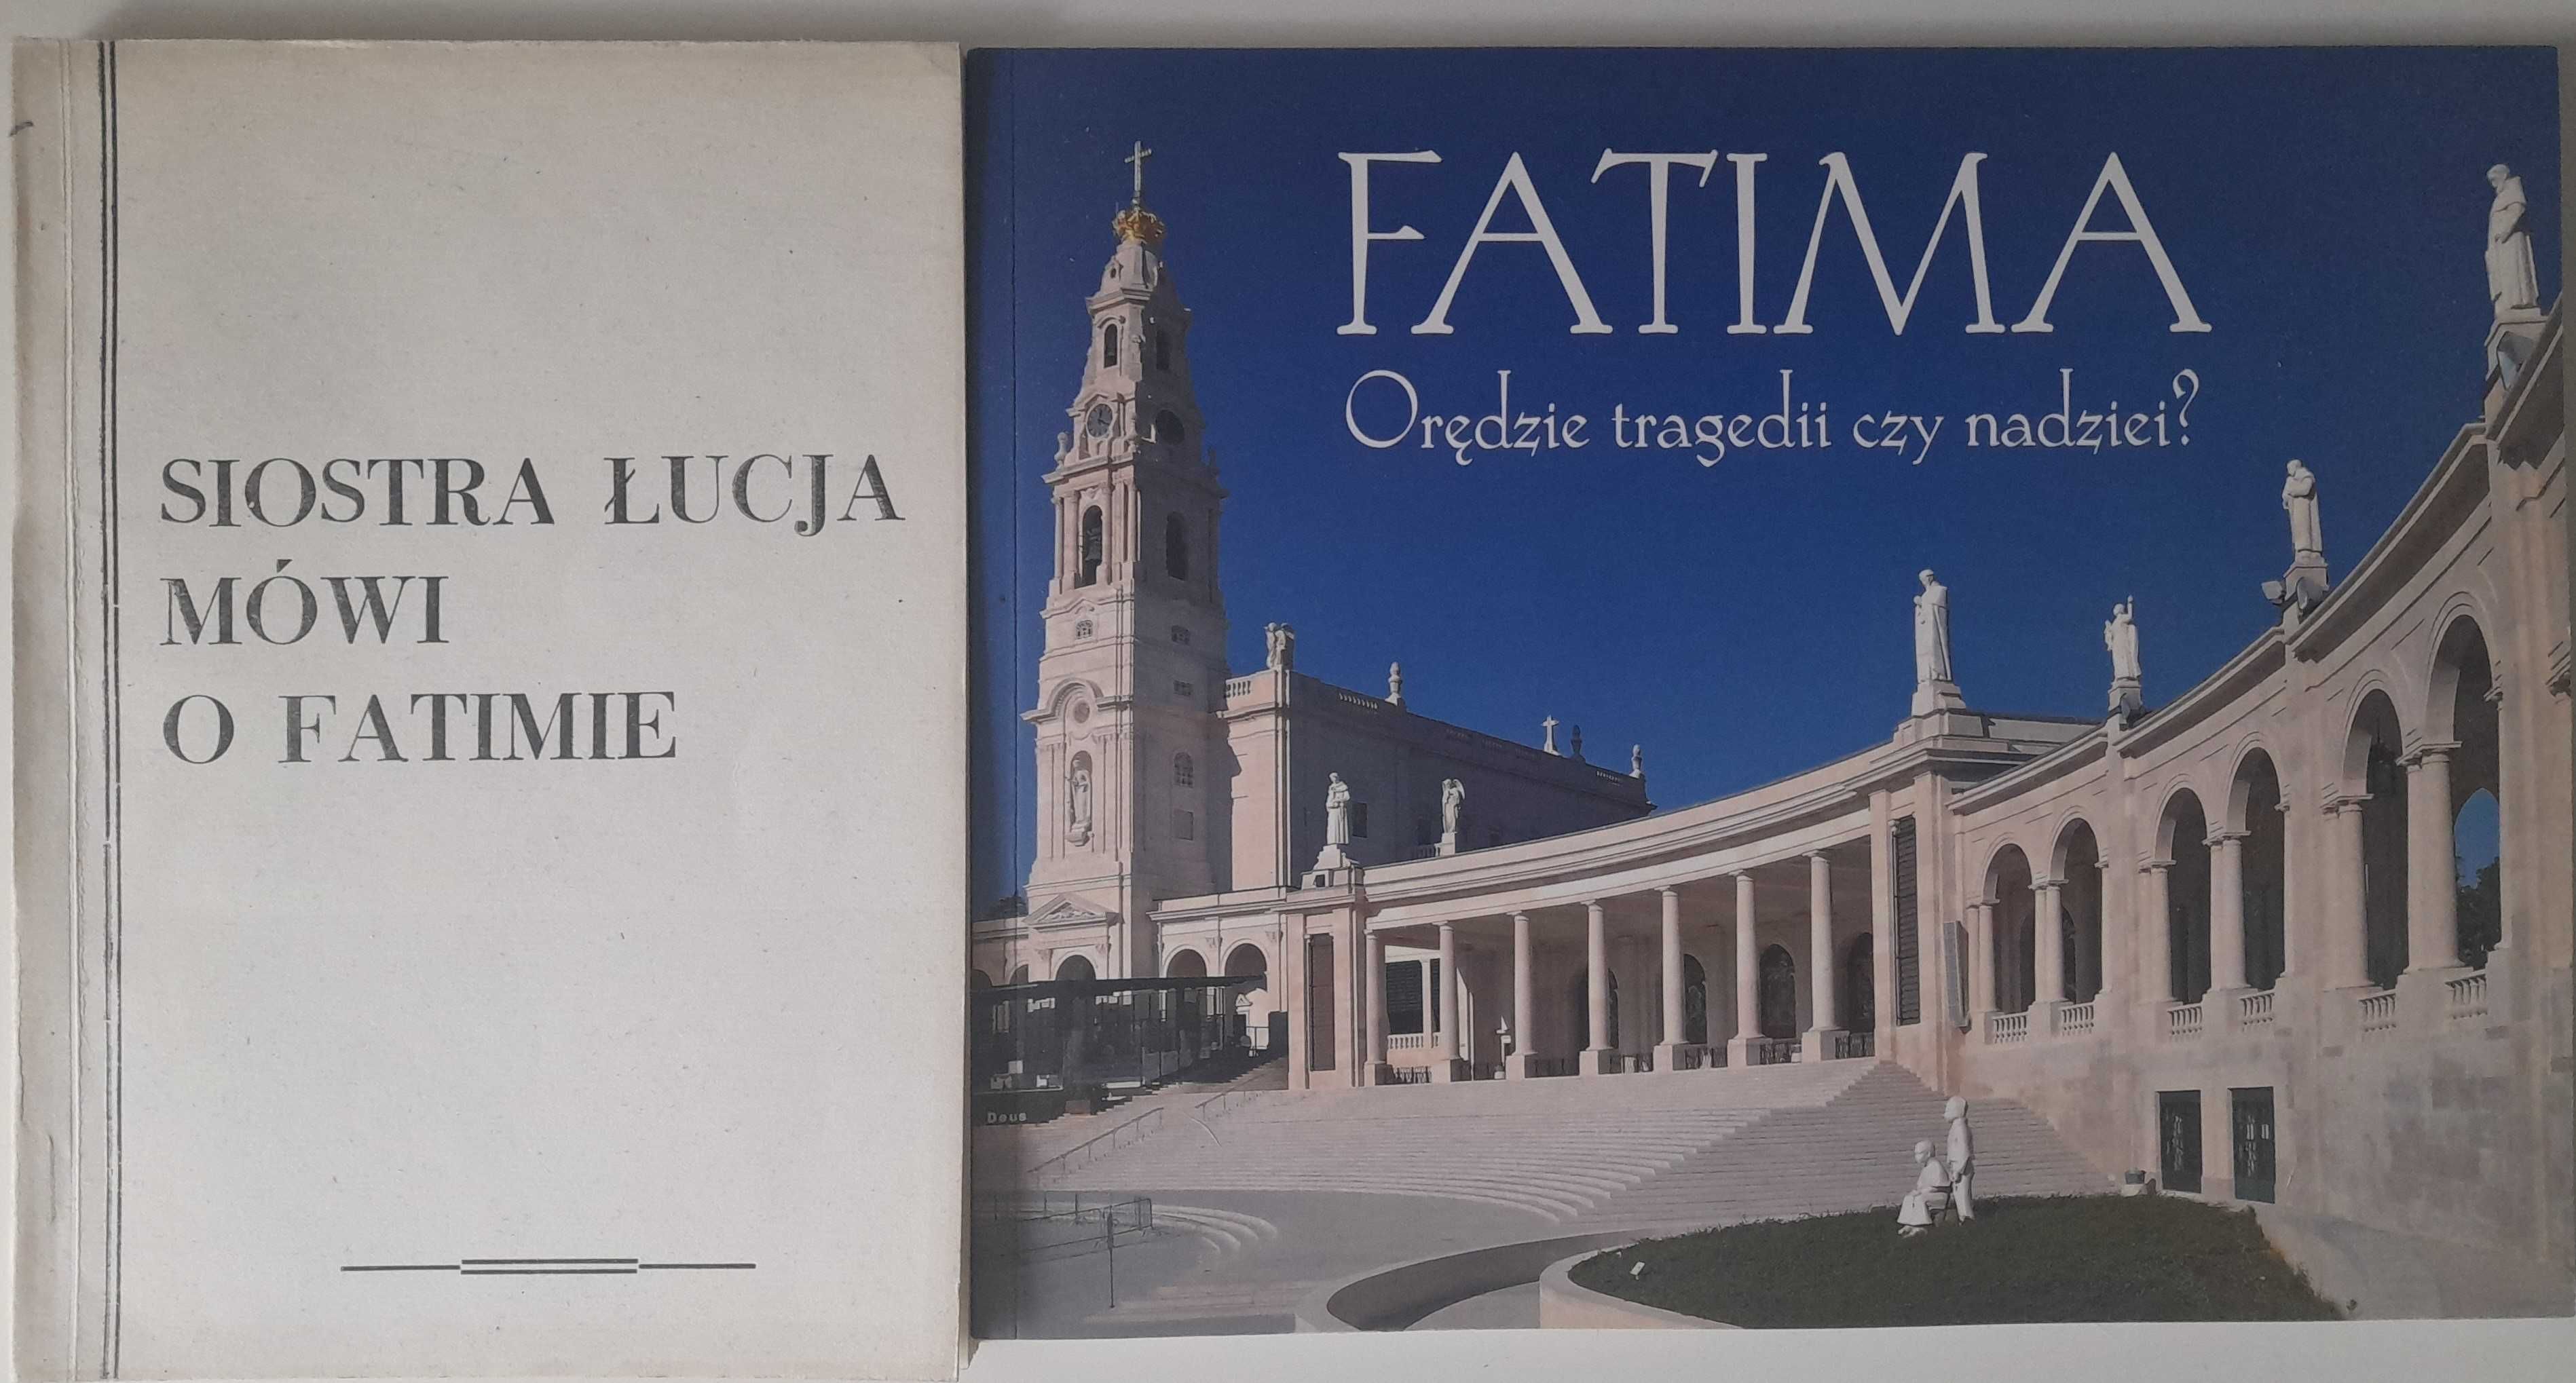 Siostra Łucja mówi o Fatimie, Fatima Orędzie tragedii czy nadziei?